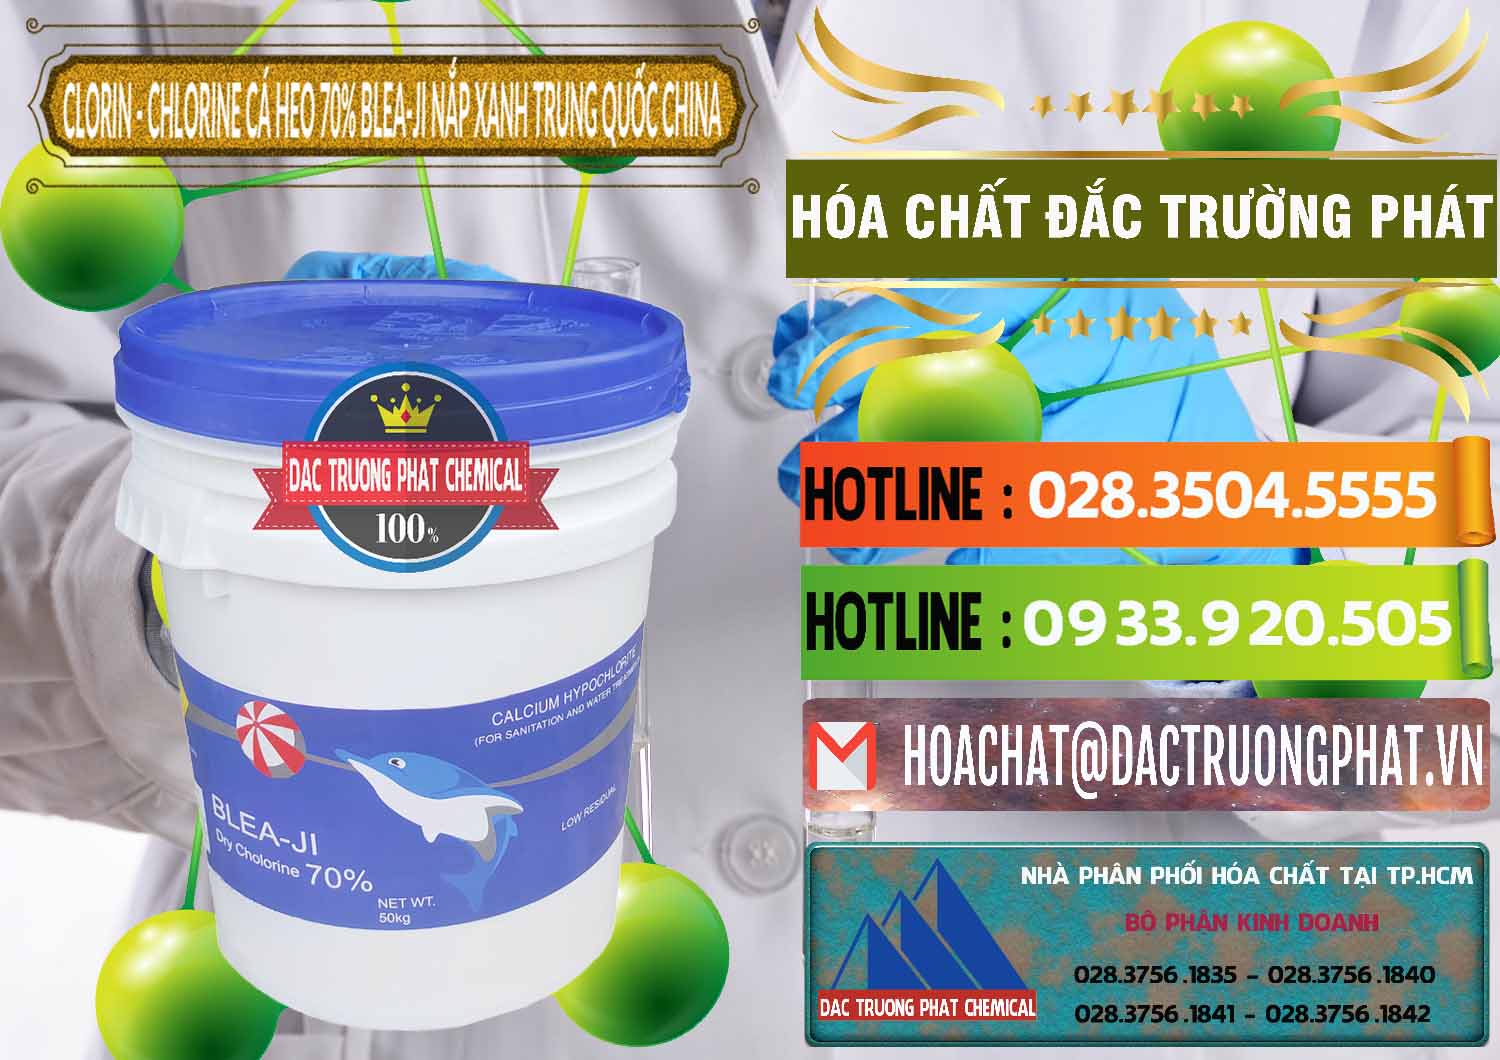 Nhà cung cấp - bán Clorin - Chlorine Cá Heo 70% Cá Heo Blea-Ji Thùng Tròn Nắp Xanh Trung Quốc China - 0208 - Nơi chuyên nhập khẩu - cung cấp hóa chất tại TP.HCM - cungcaphoachat.com.vn